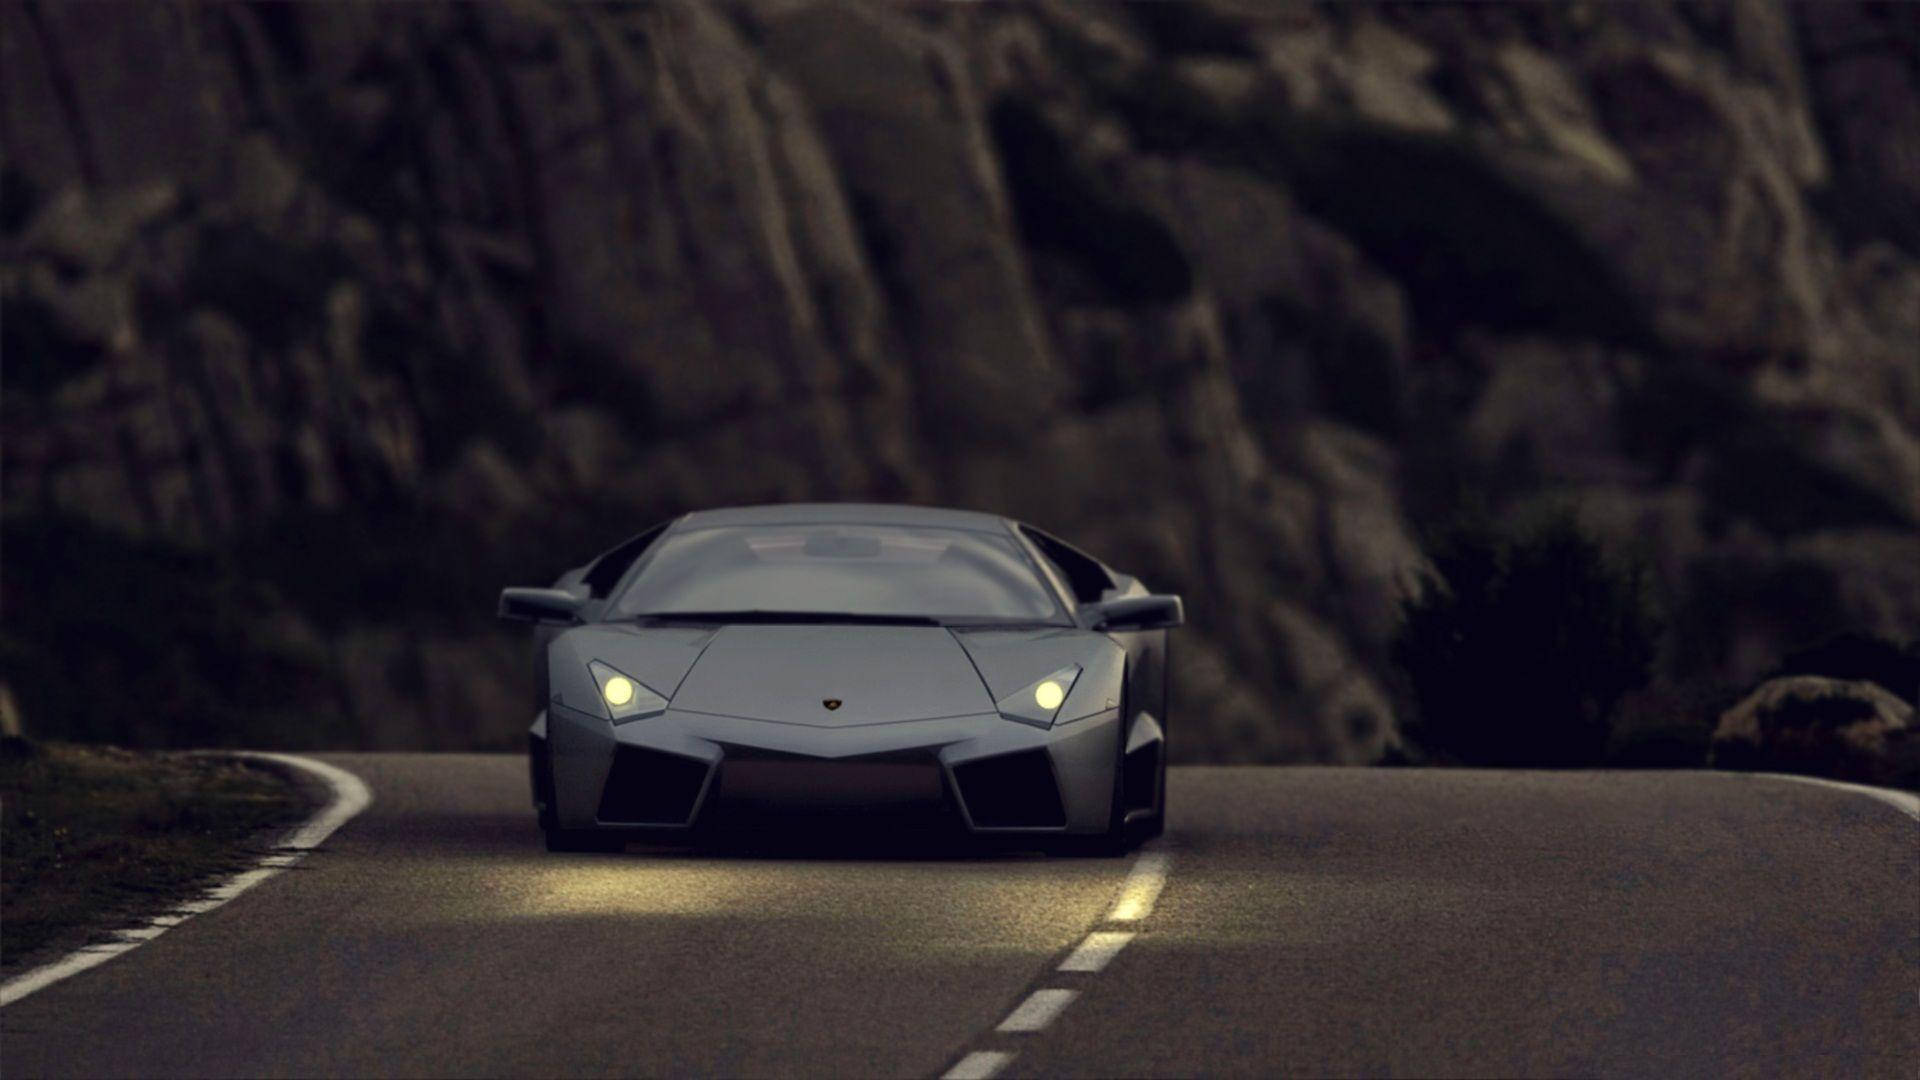 Black Lamborghini On The Road Wallpaper